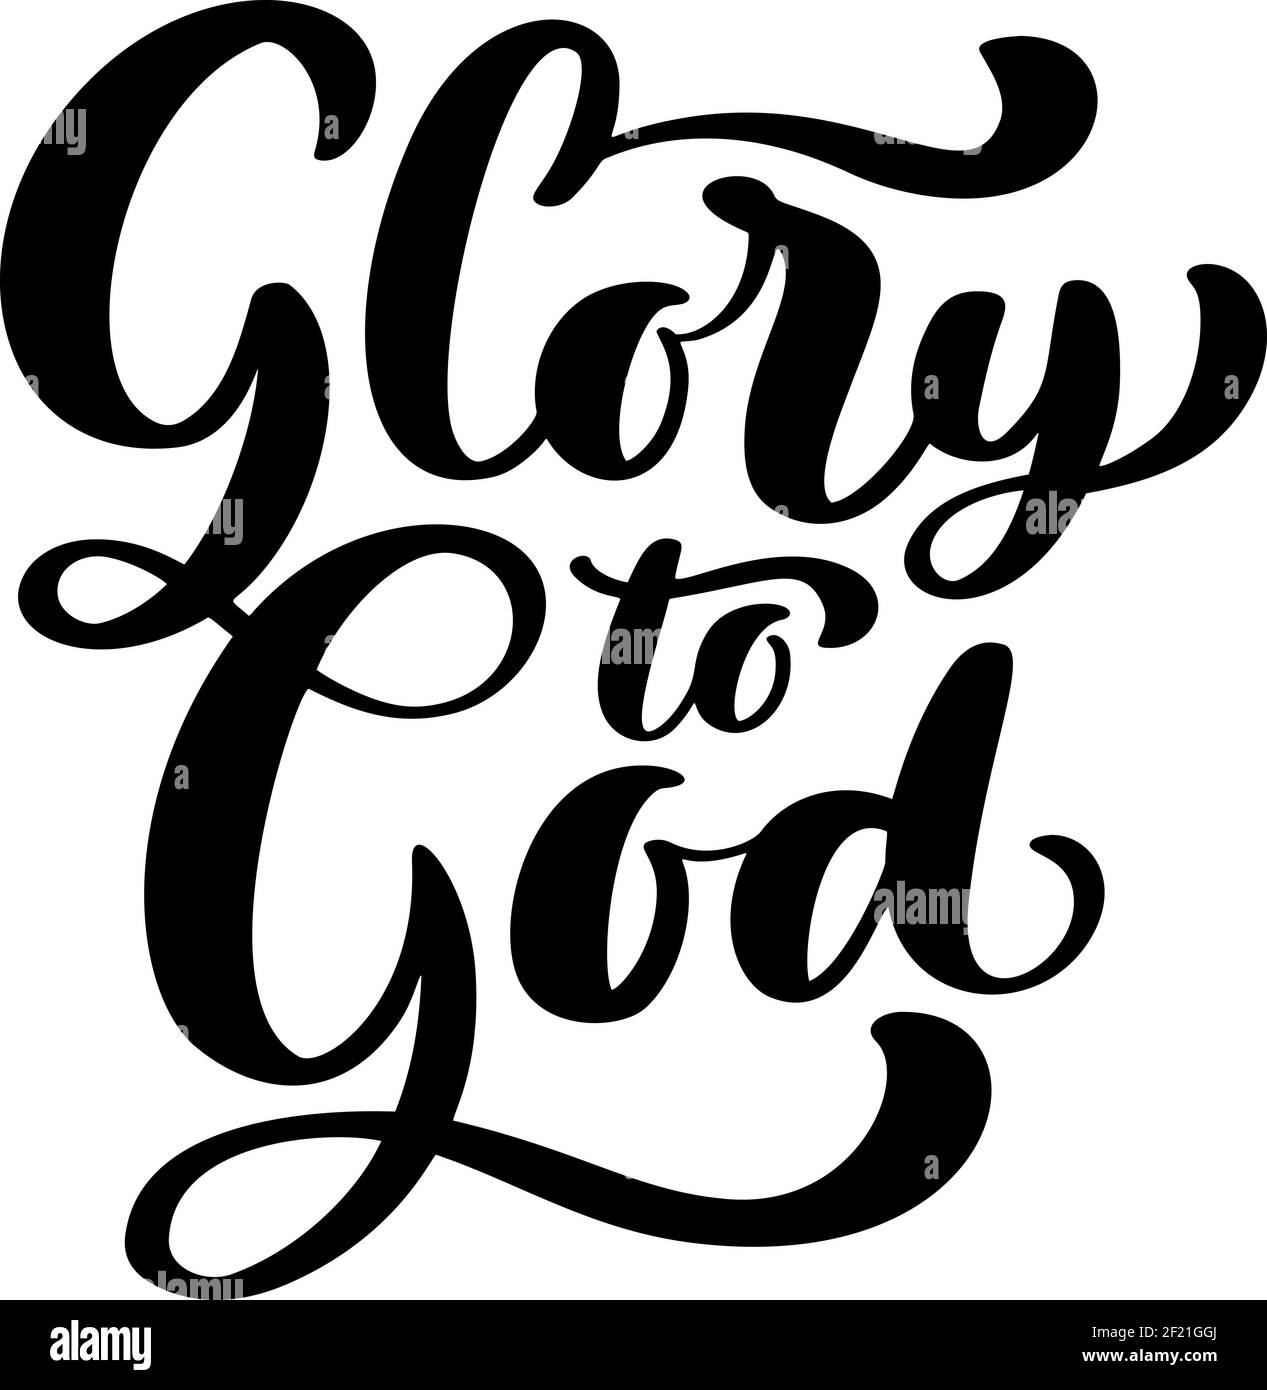 Glory to God christian testo disegnato a mano logo scritta biglietto d'auguri. Tipografia frase vettoriale calligrafia fatta a mano citazione su isolati bianco Illustrazione Vettoriale